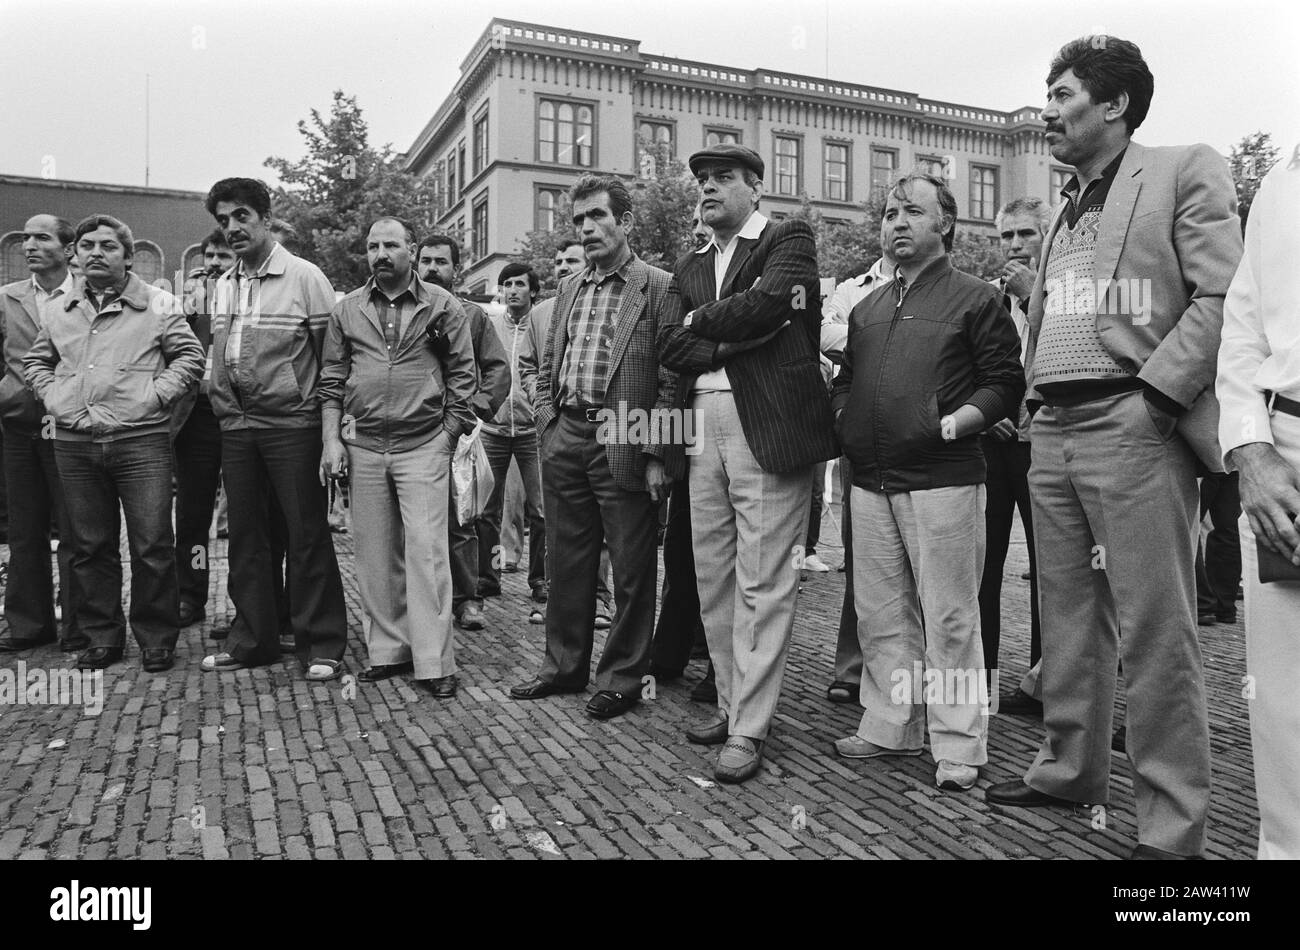 Protesta lavoratori stranieri durante il trattamento Remigration Note Aia Data: 5 giugno 1985 luogo: L'Aia, Sud Olanda Parole Chiave: Stranieri, DIPENDENTI, proteste Foto Stock